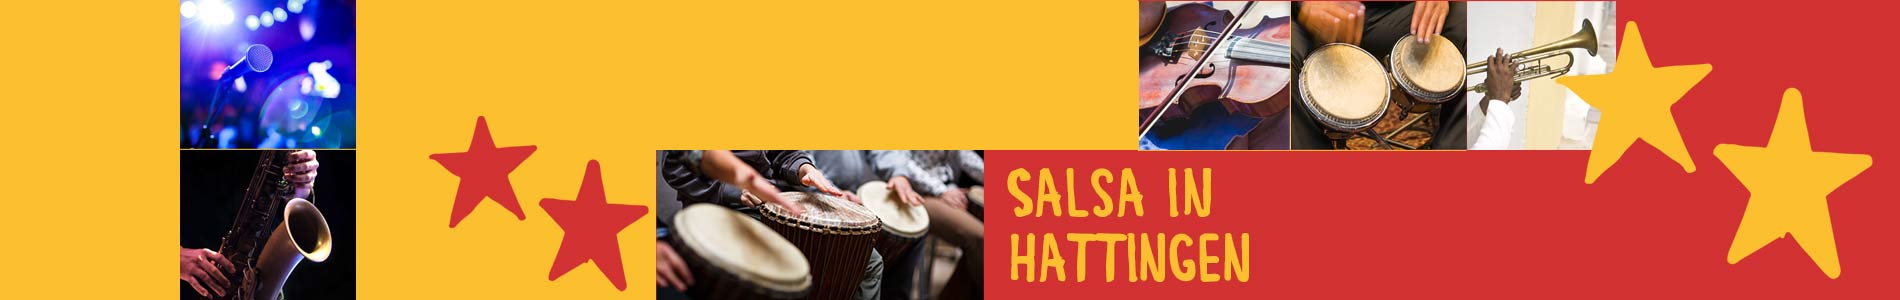 Salsa in Hattingen – Salsa lernen und tanzen, Tanzkurse, Partys, Veranstaltungen